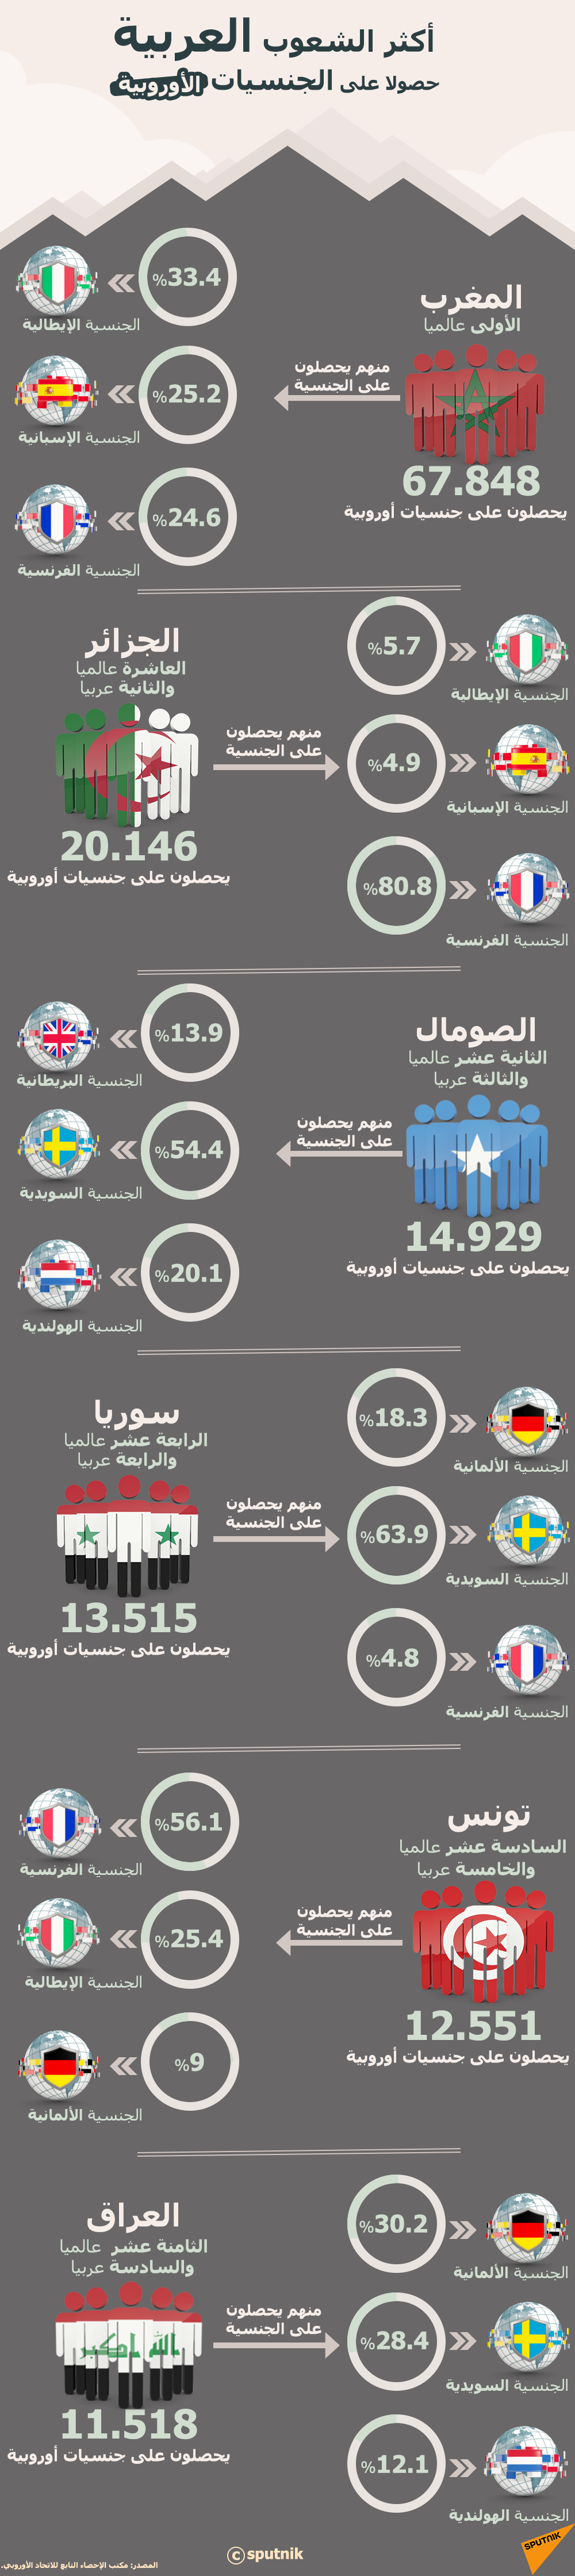 أكثر الشعوب العربية حصولا على الجنسيات الأوروبية - سبوتنيك عربي